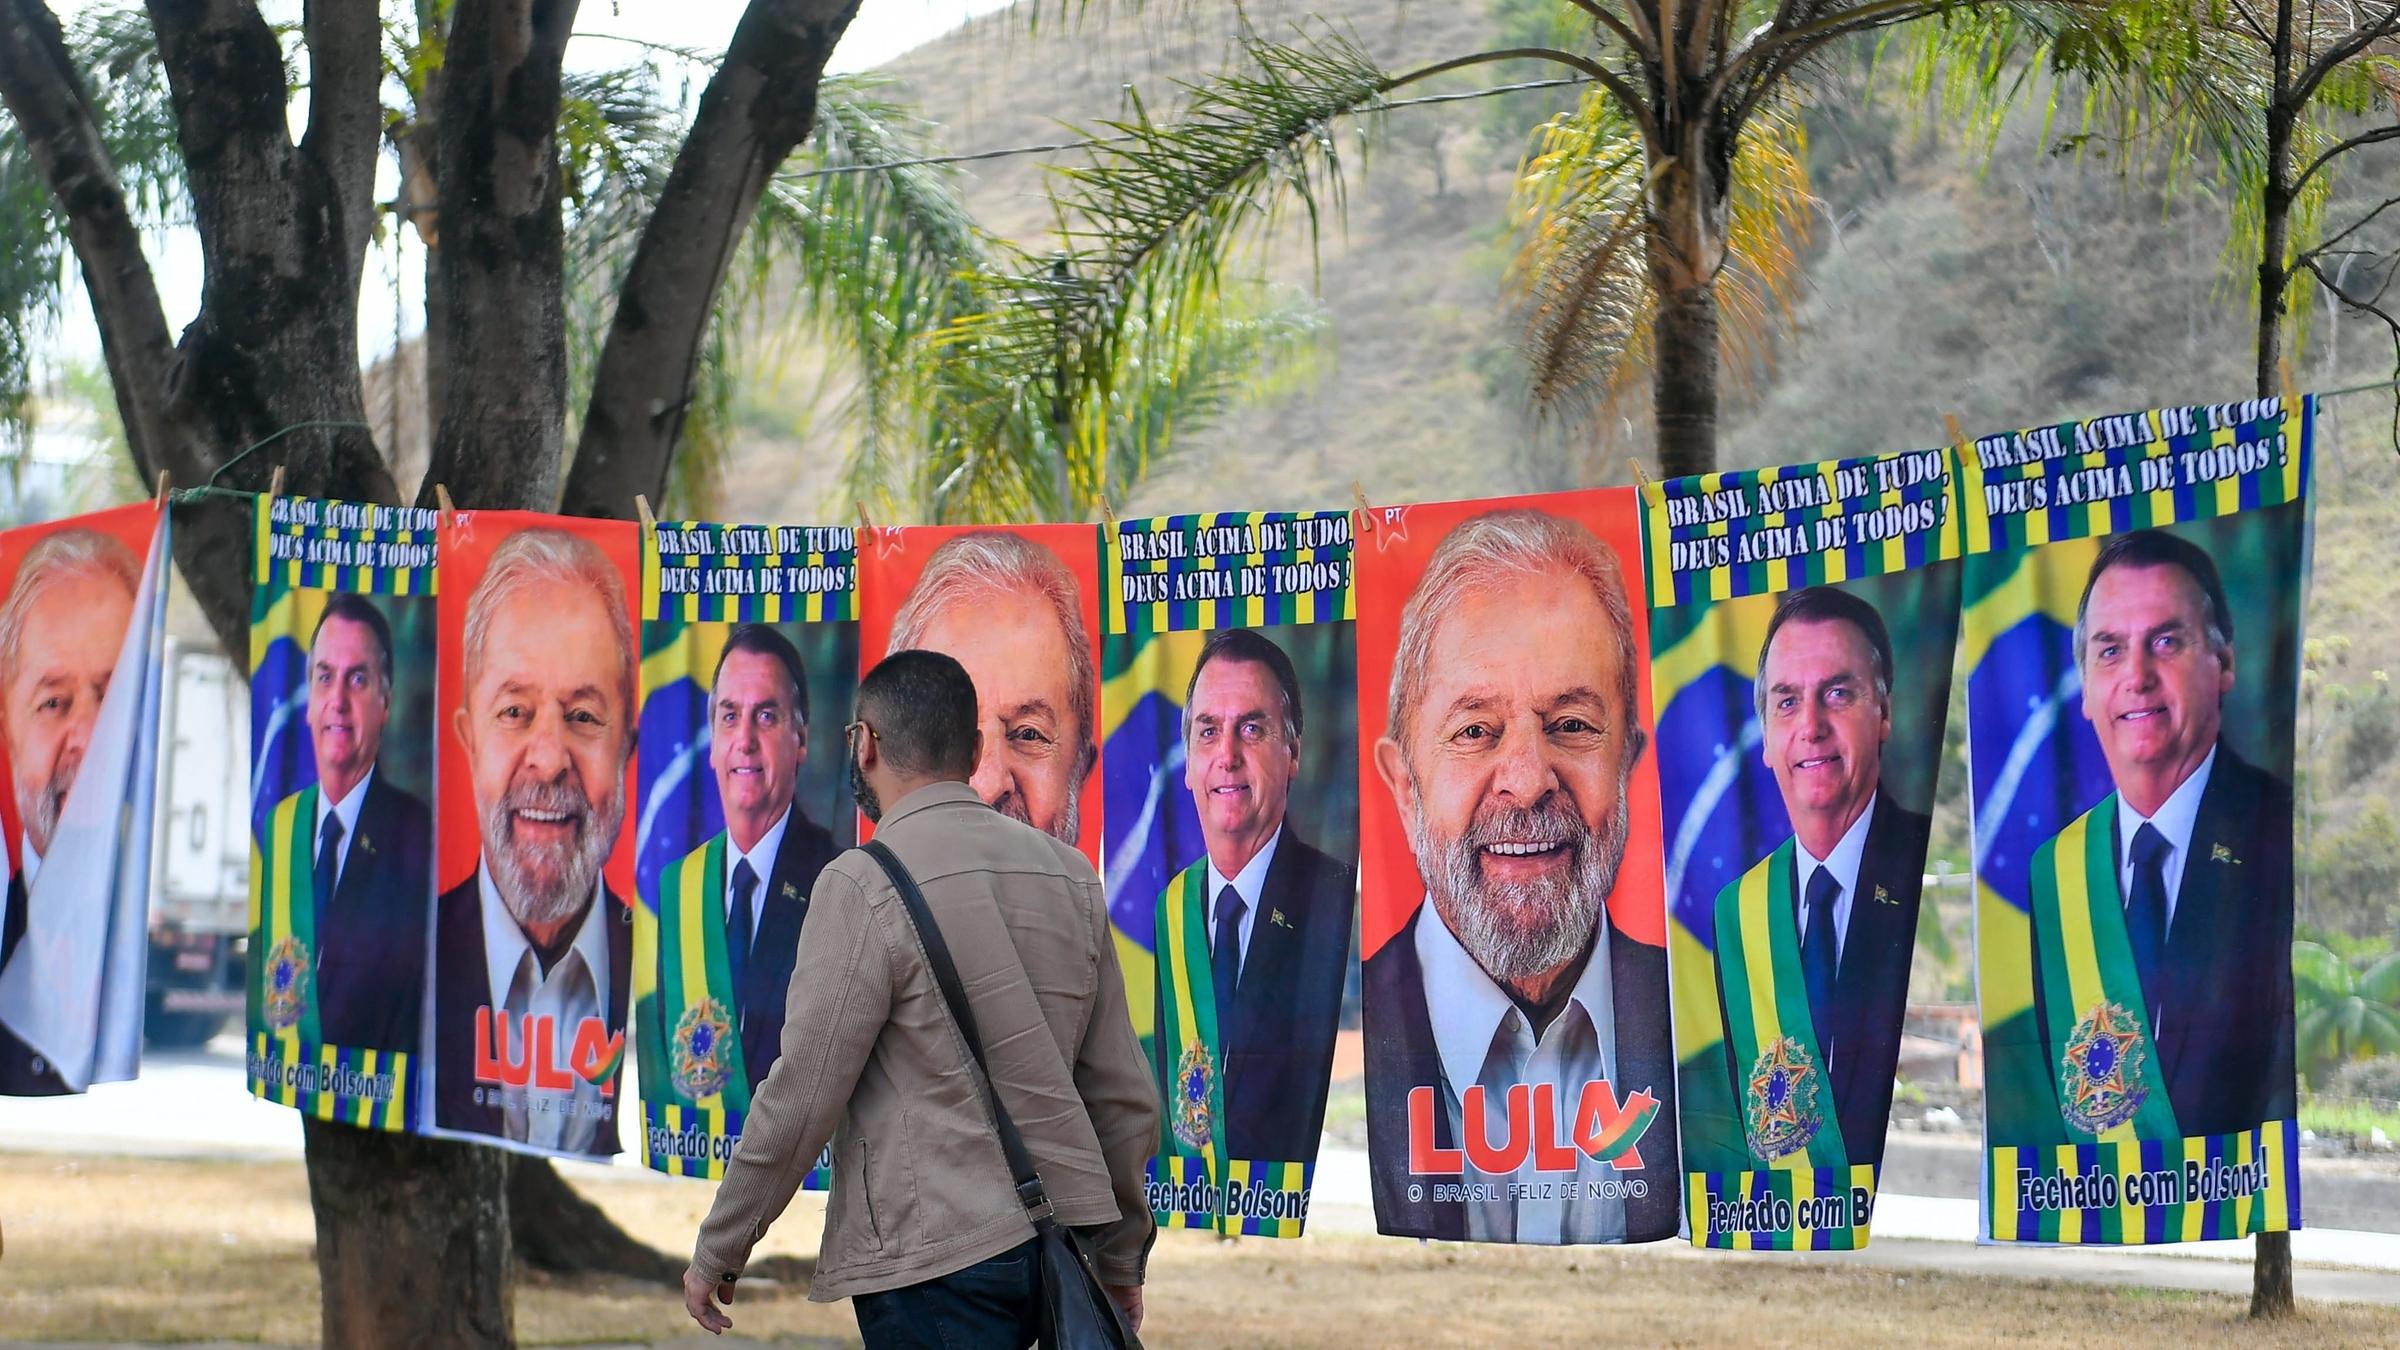 Porträts der beiden aussichtsreichsten Kandidaten für die Präsidentschaftswahl 2022, Amtsinhaber Jair Bolsonaro und Herausforderer und Ex-Präsident Lula, sind entlang einer Straße aufgehängt. 